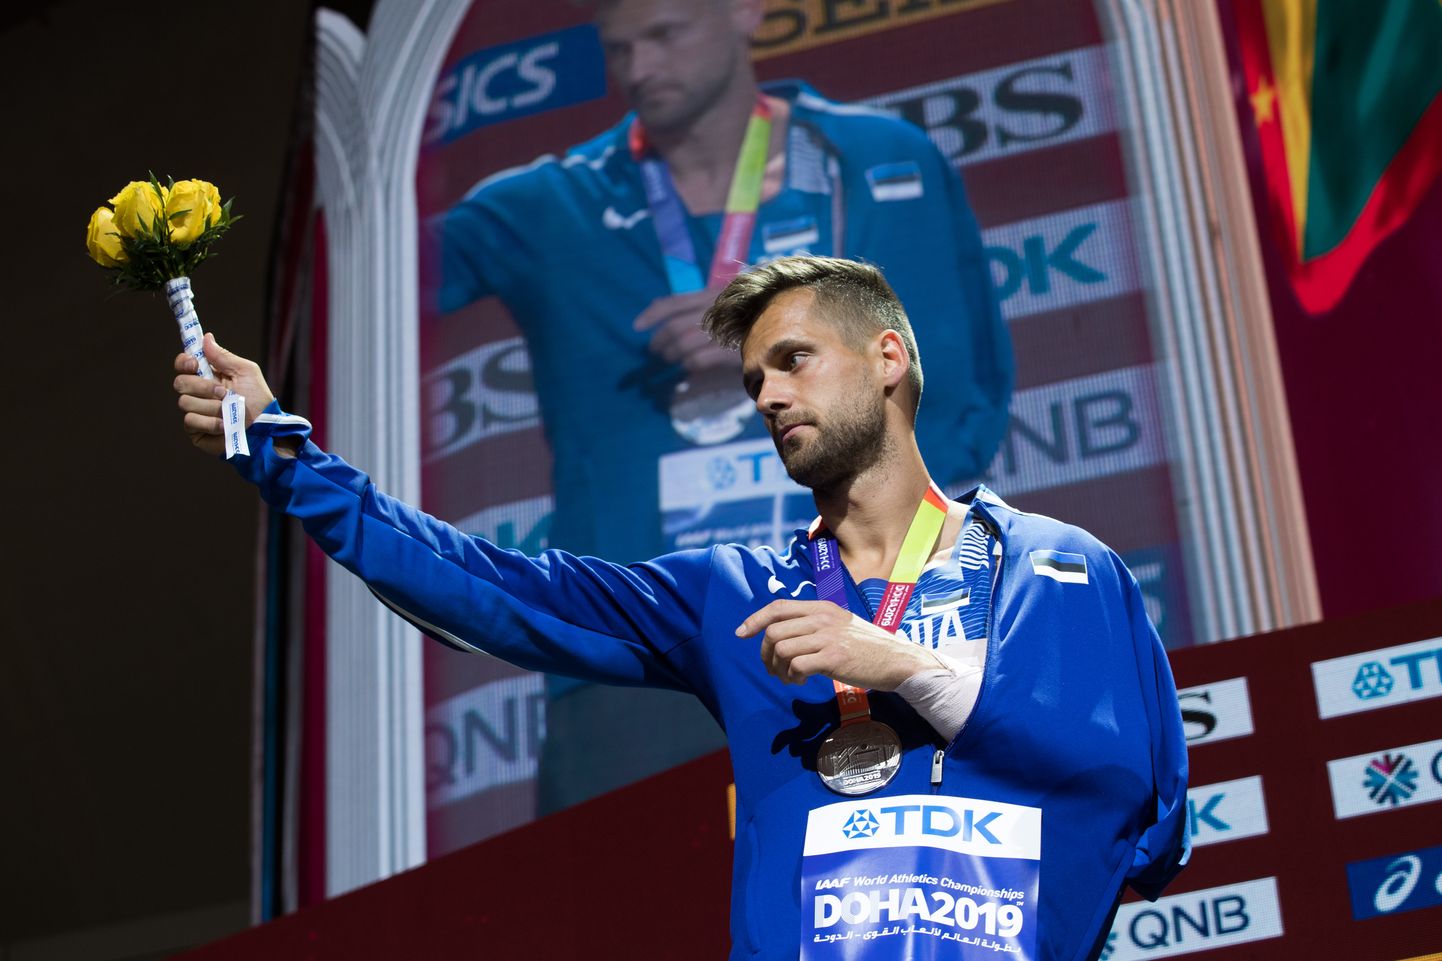 Eelmise aasta Eesti parim meessportlane Magnus Kirt MM-hõbedaga.